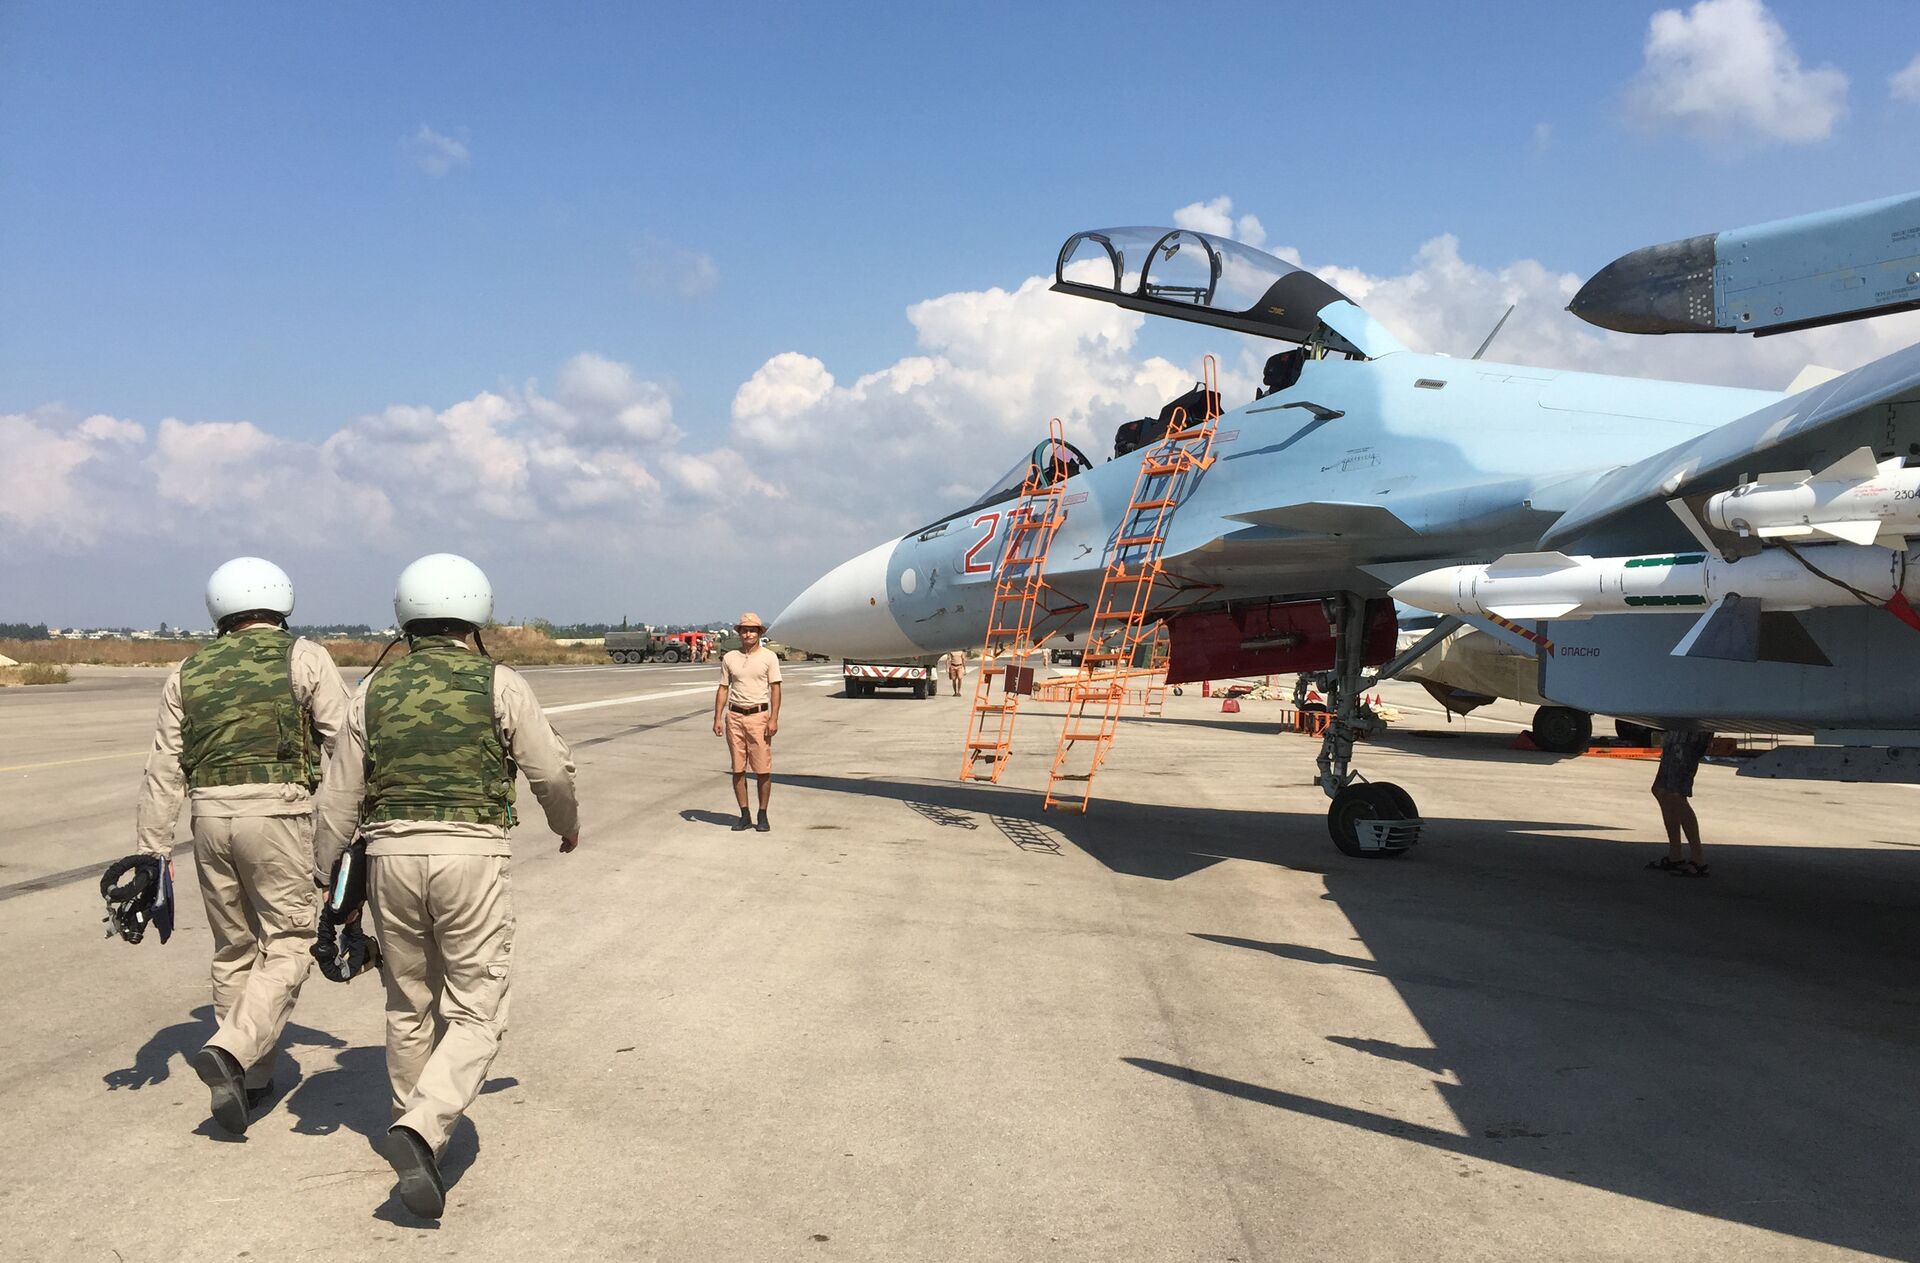 Российские летчики готовятся к посадке в истребитель Су-30 перед вылетом с аэродрома Хмеймим в Сирии. 5 октября 2015 - ИноСМИ, 1920, 04.10.2021